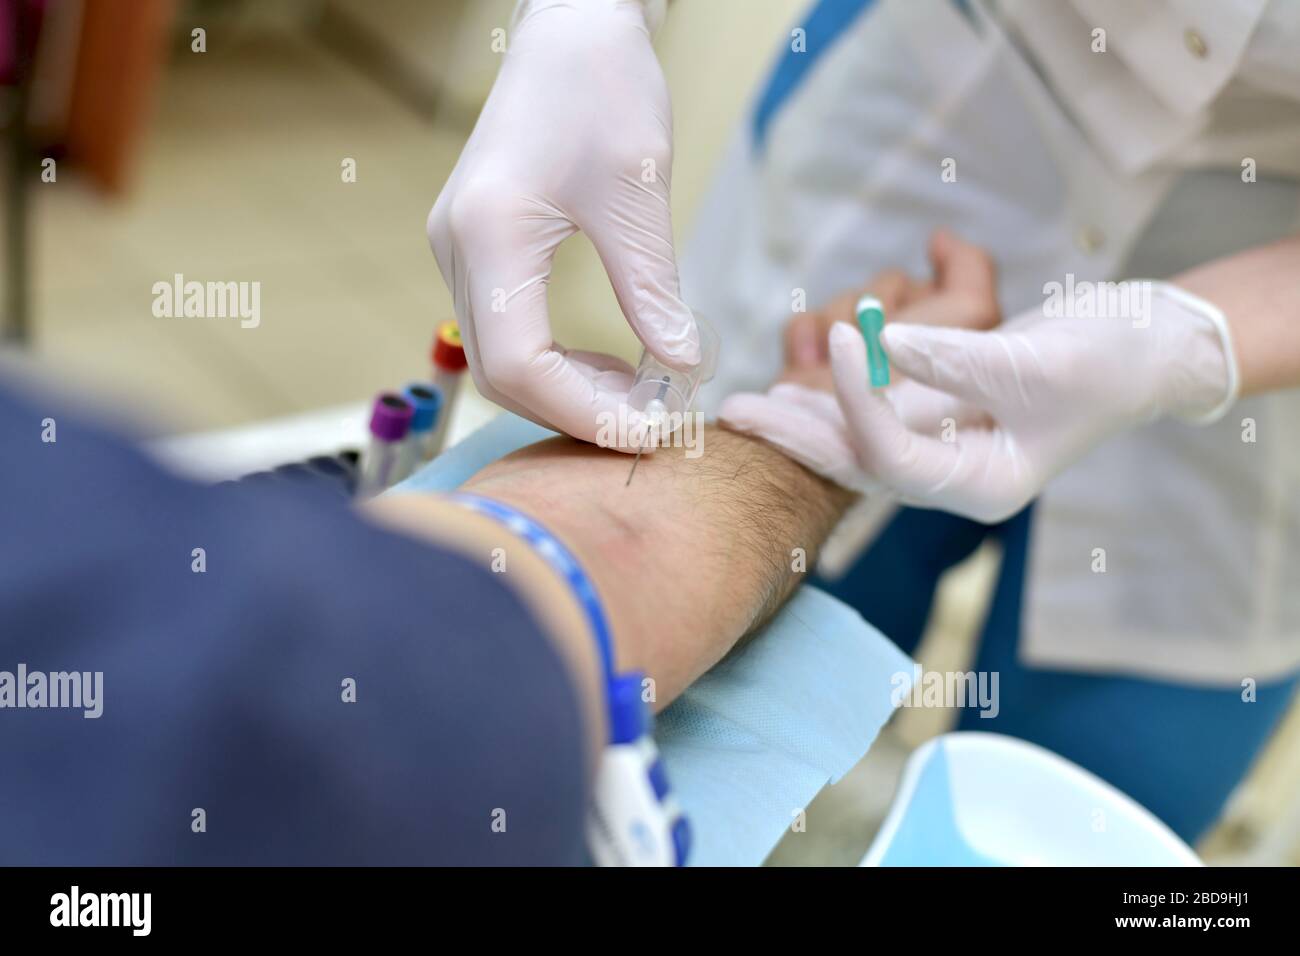 Proceso de toma de sangre venosa a través de una aguja para su análisis en un paciente de un enfermero de procedimiento médico masculino. Foto de stock